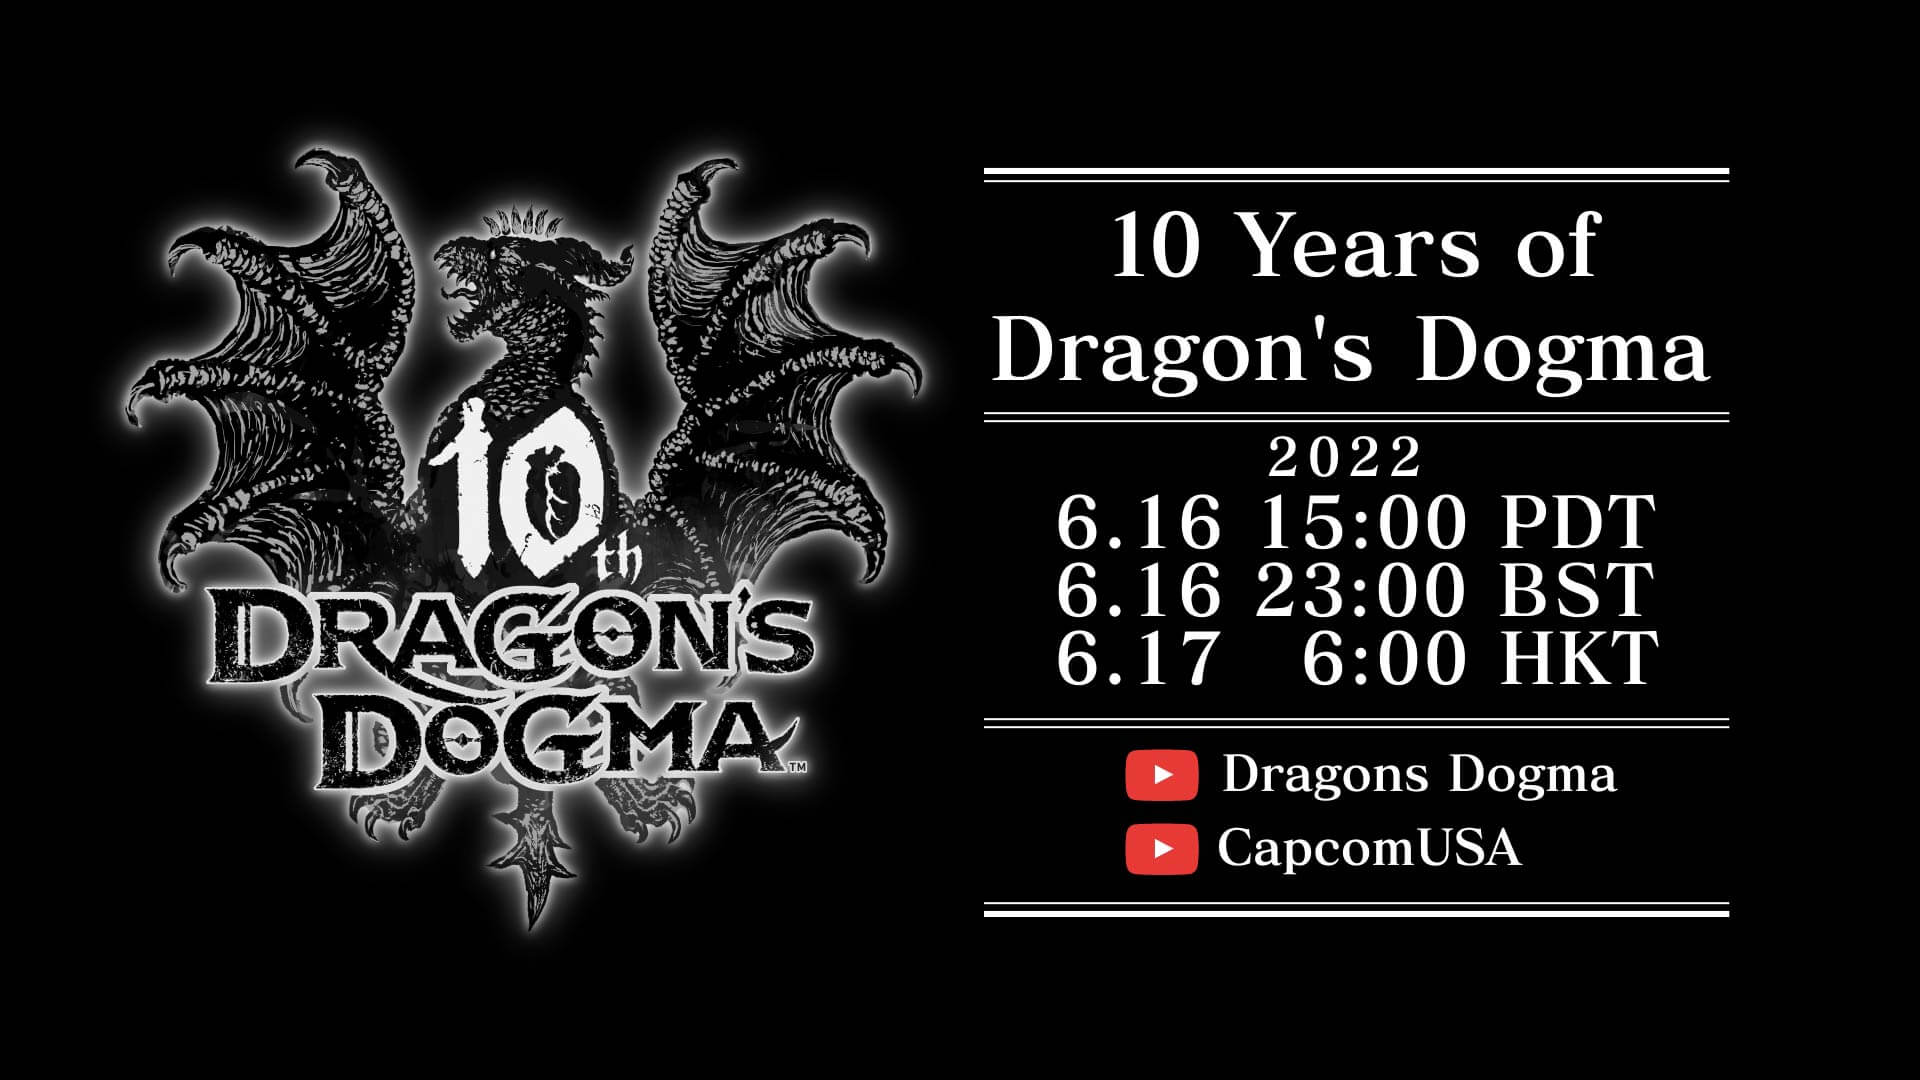 Dragon's Dogma celebrará su 10 aniversario con un evento